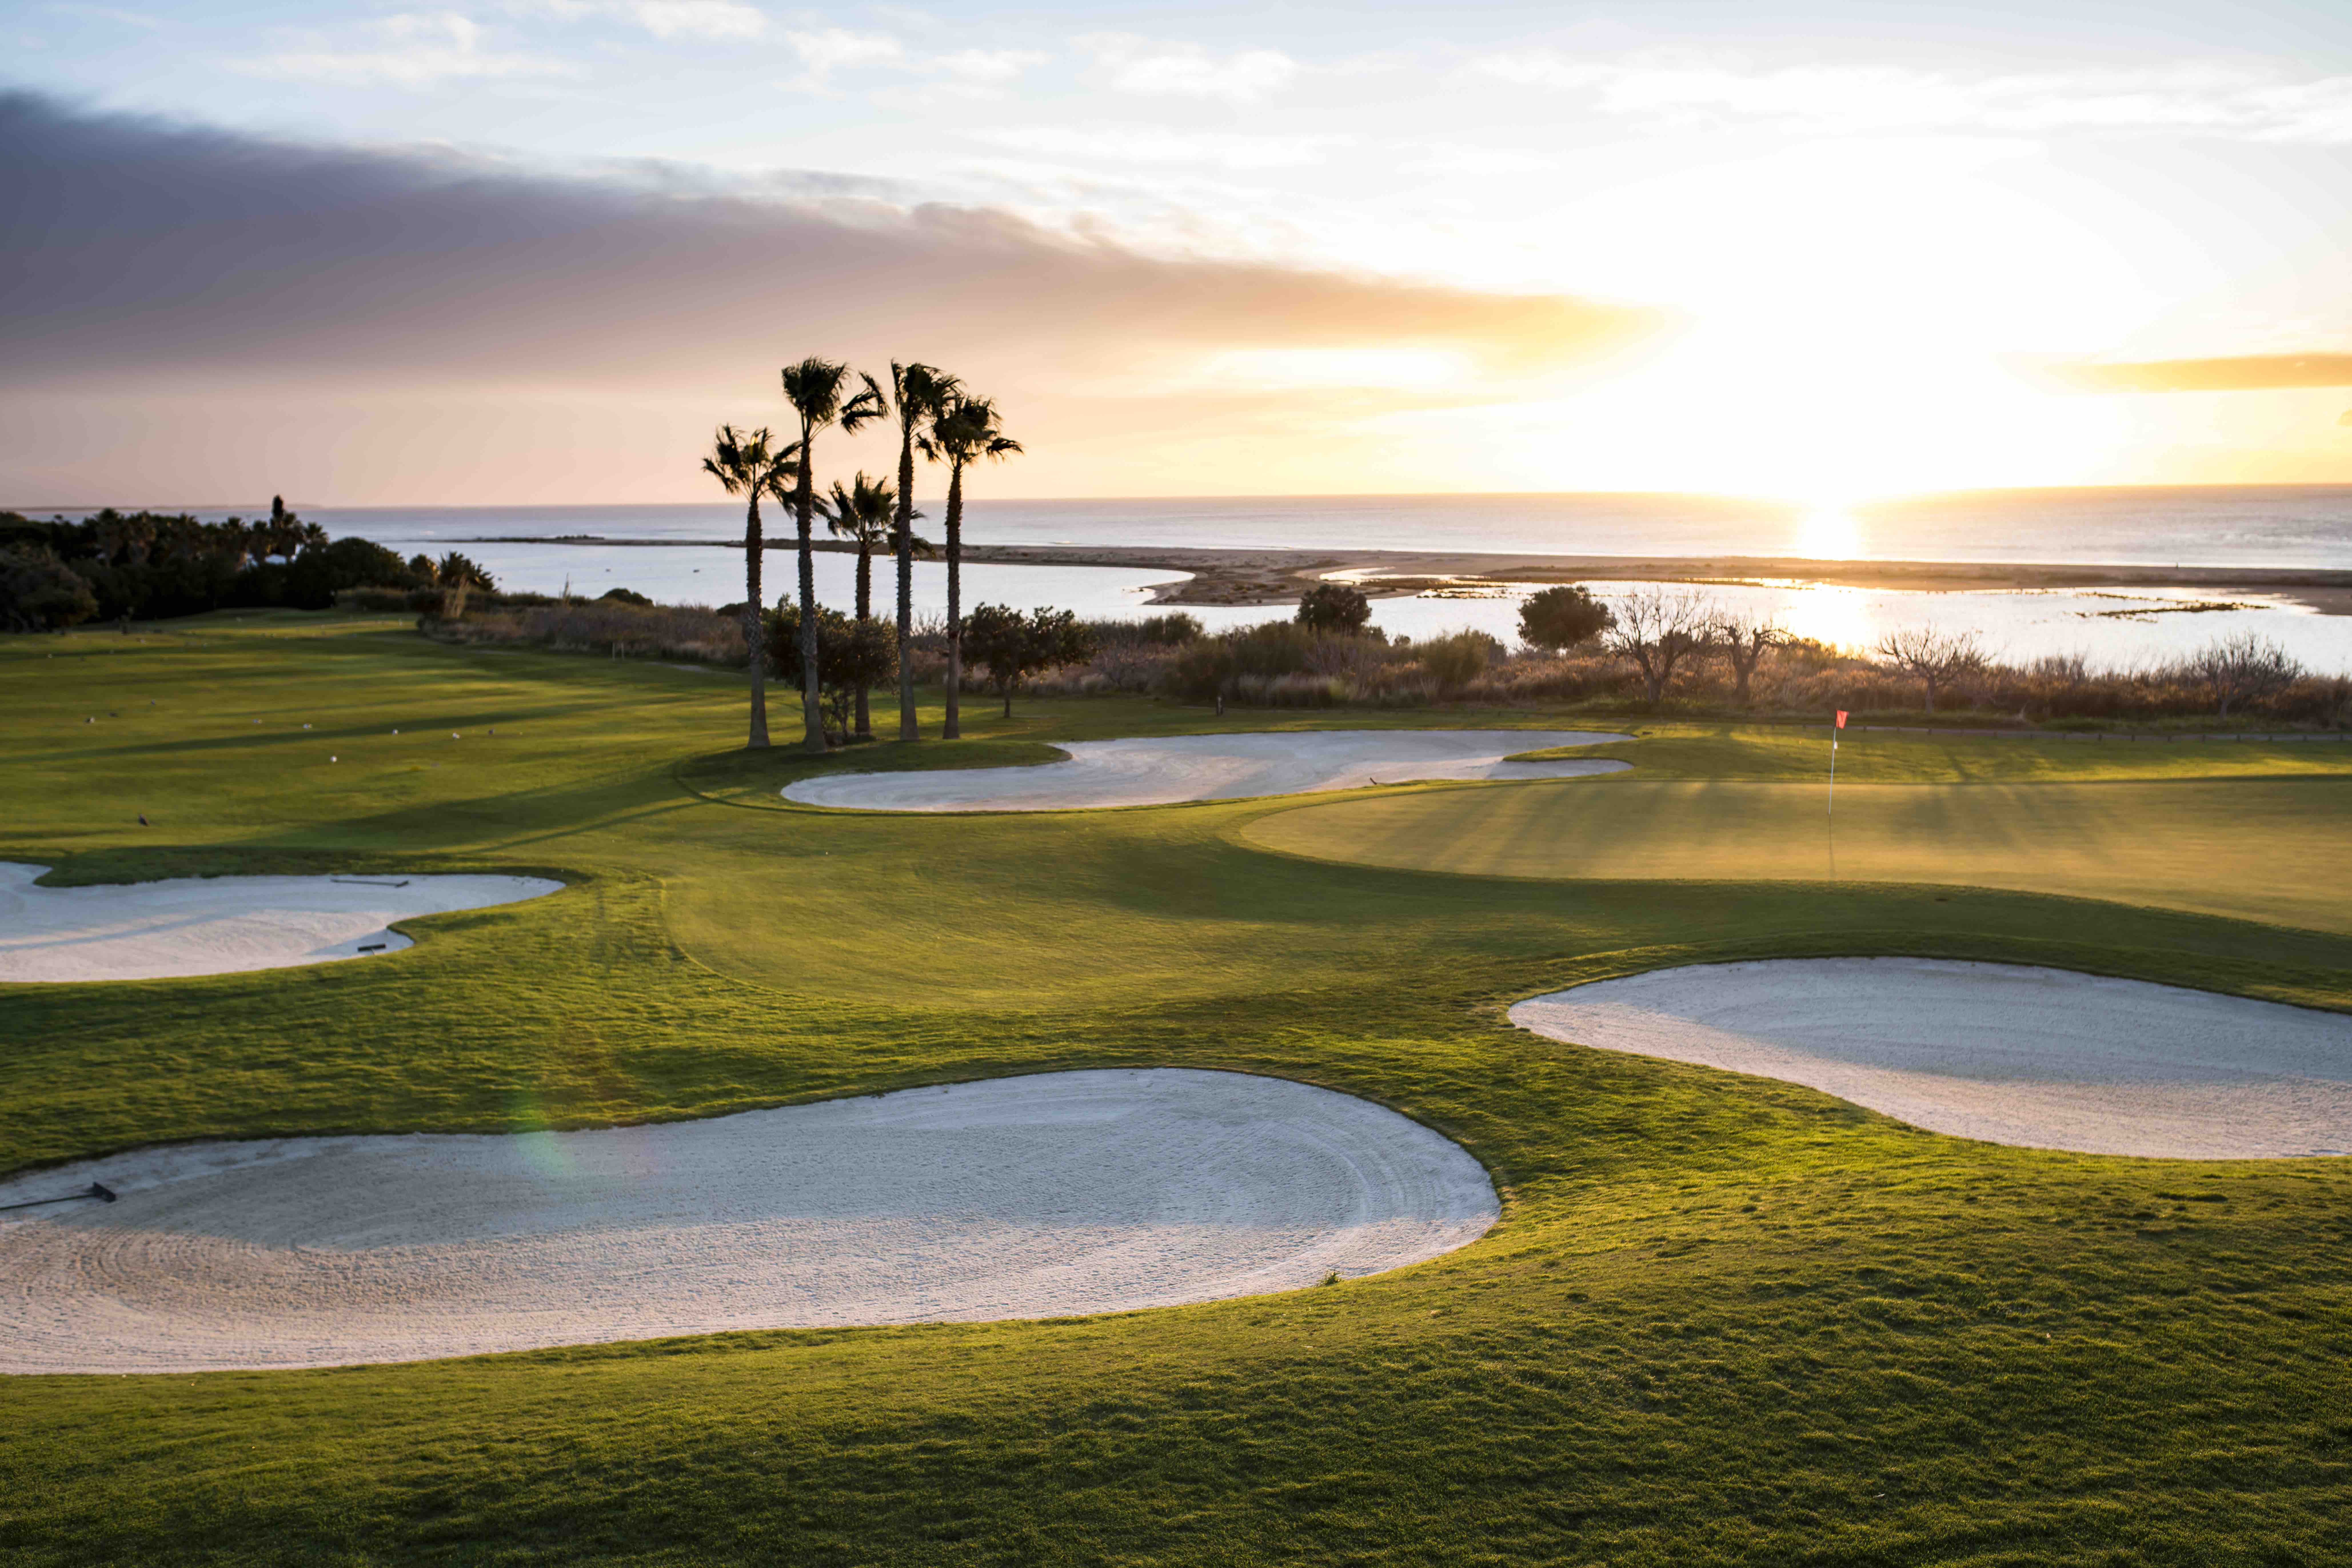 Golfen in Portugal beste golfbestemming van Europa MANNENSTYLE